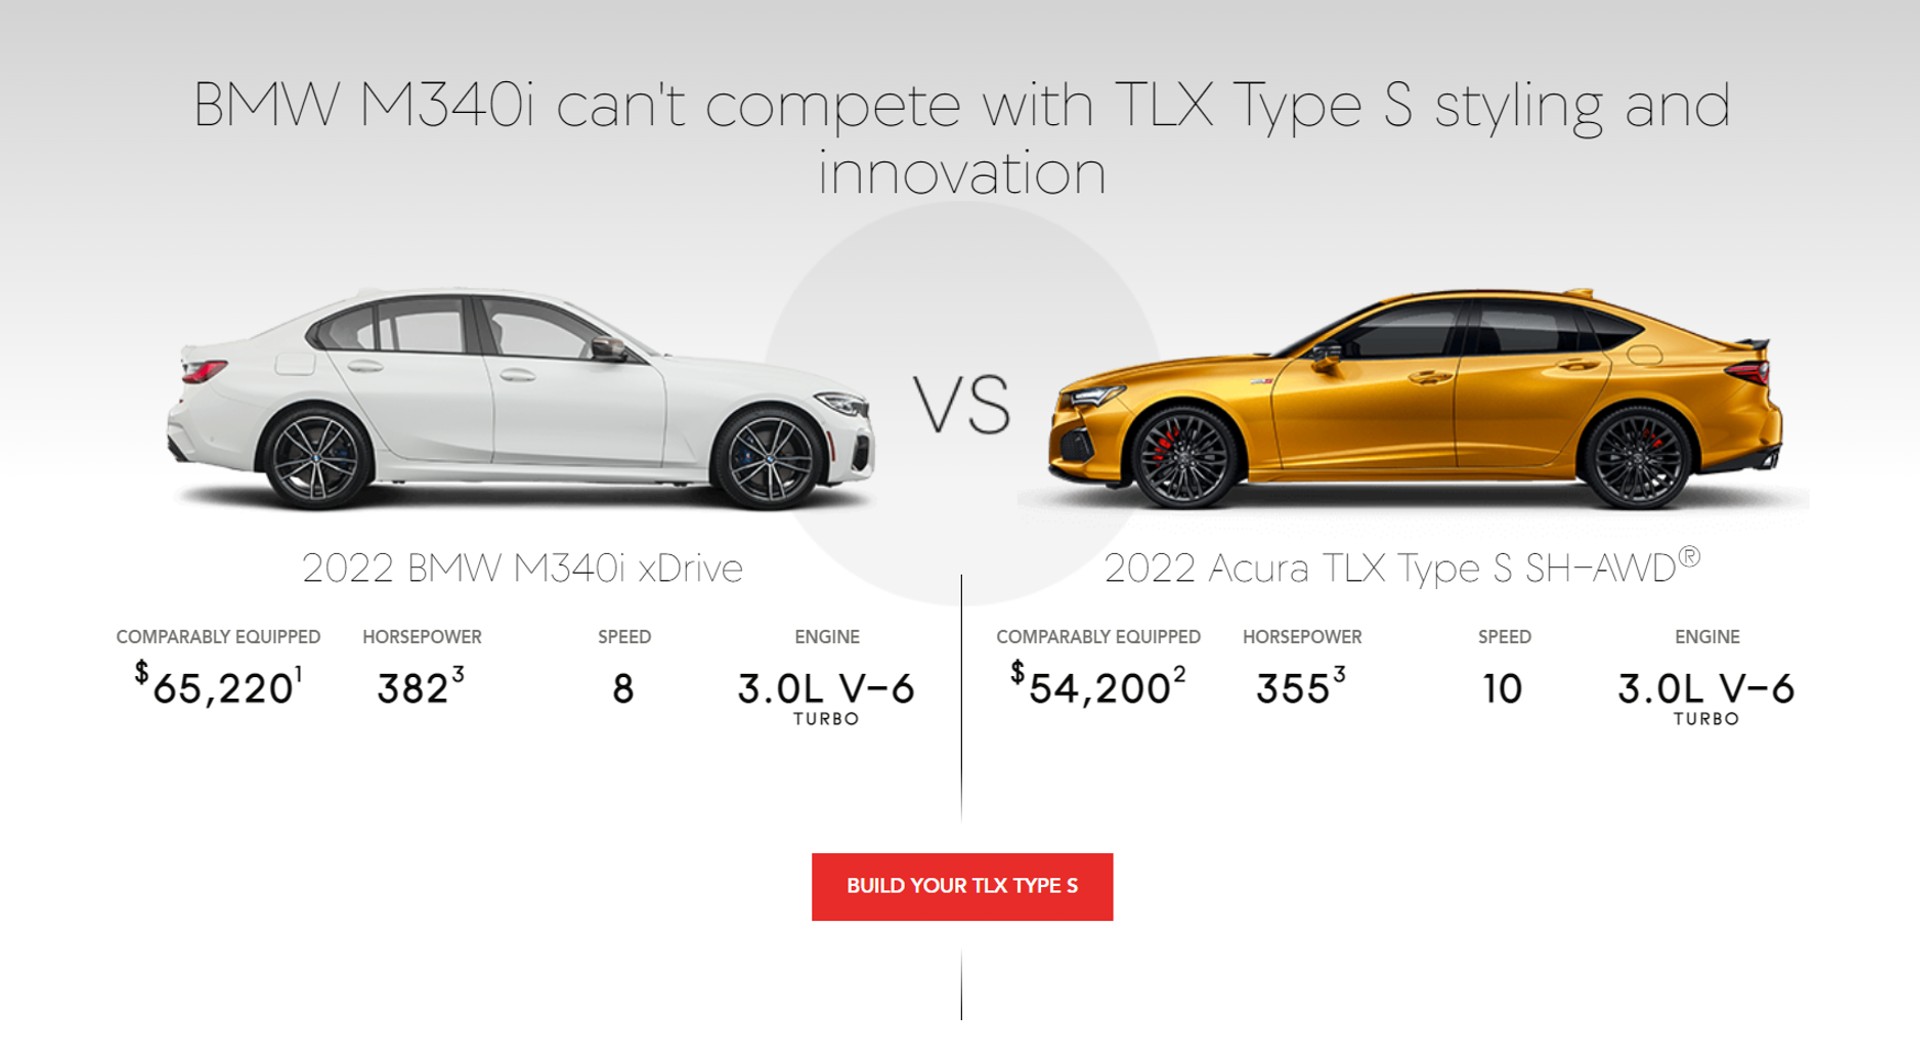 Acura pense que la BMW M340i a un V6 dans le tableau de comparaison avec sa propre TLX Type S